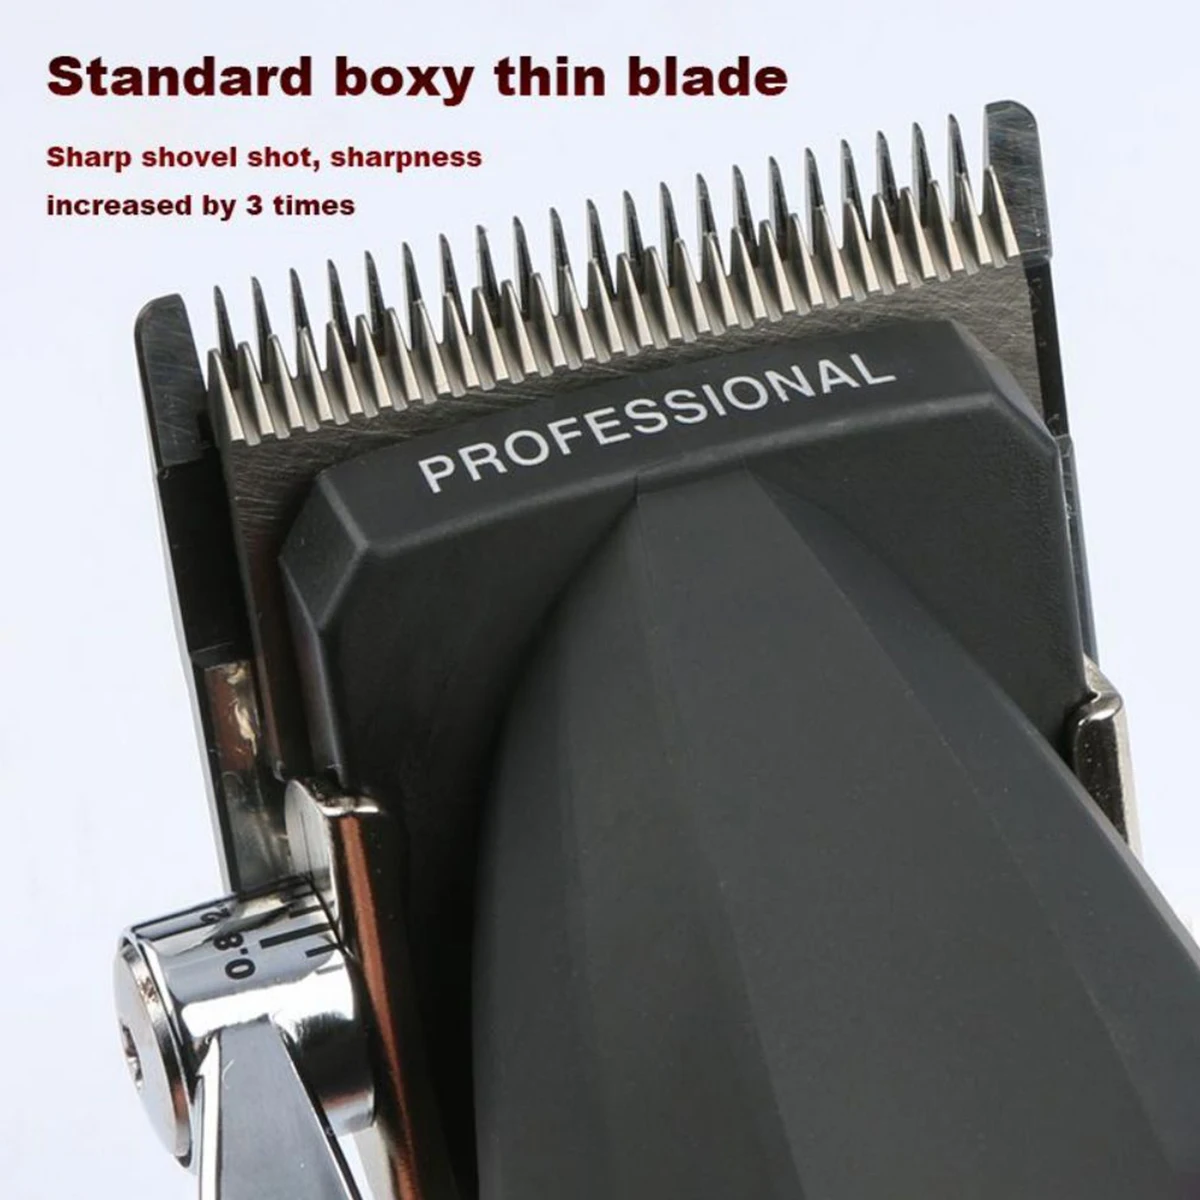 Набор профессиональных станков для резки Bill Pro DLC Blade 9000 об/мин фольгированная бритва парикмахерская профессиональная машинка для стрижки волос.1